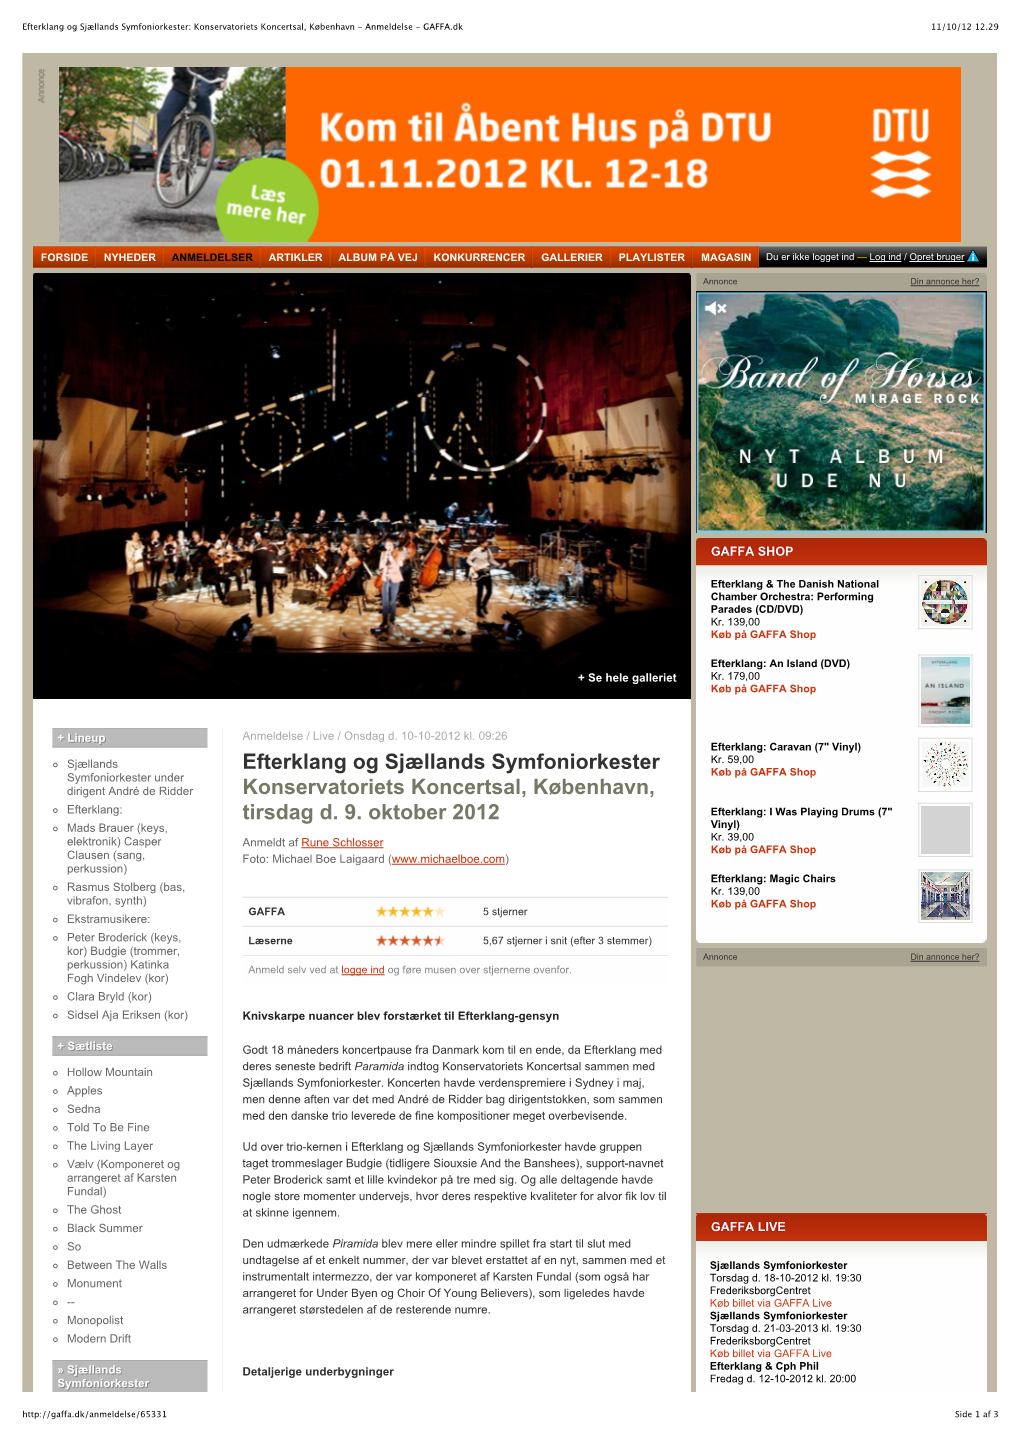 Efterklang Og Sjællands Symfoniorkester: Konservatoriets Koncertsal, København - Anmeldelse - GAFFA.Dk 11/10/12 12.29